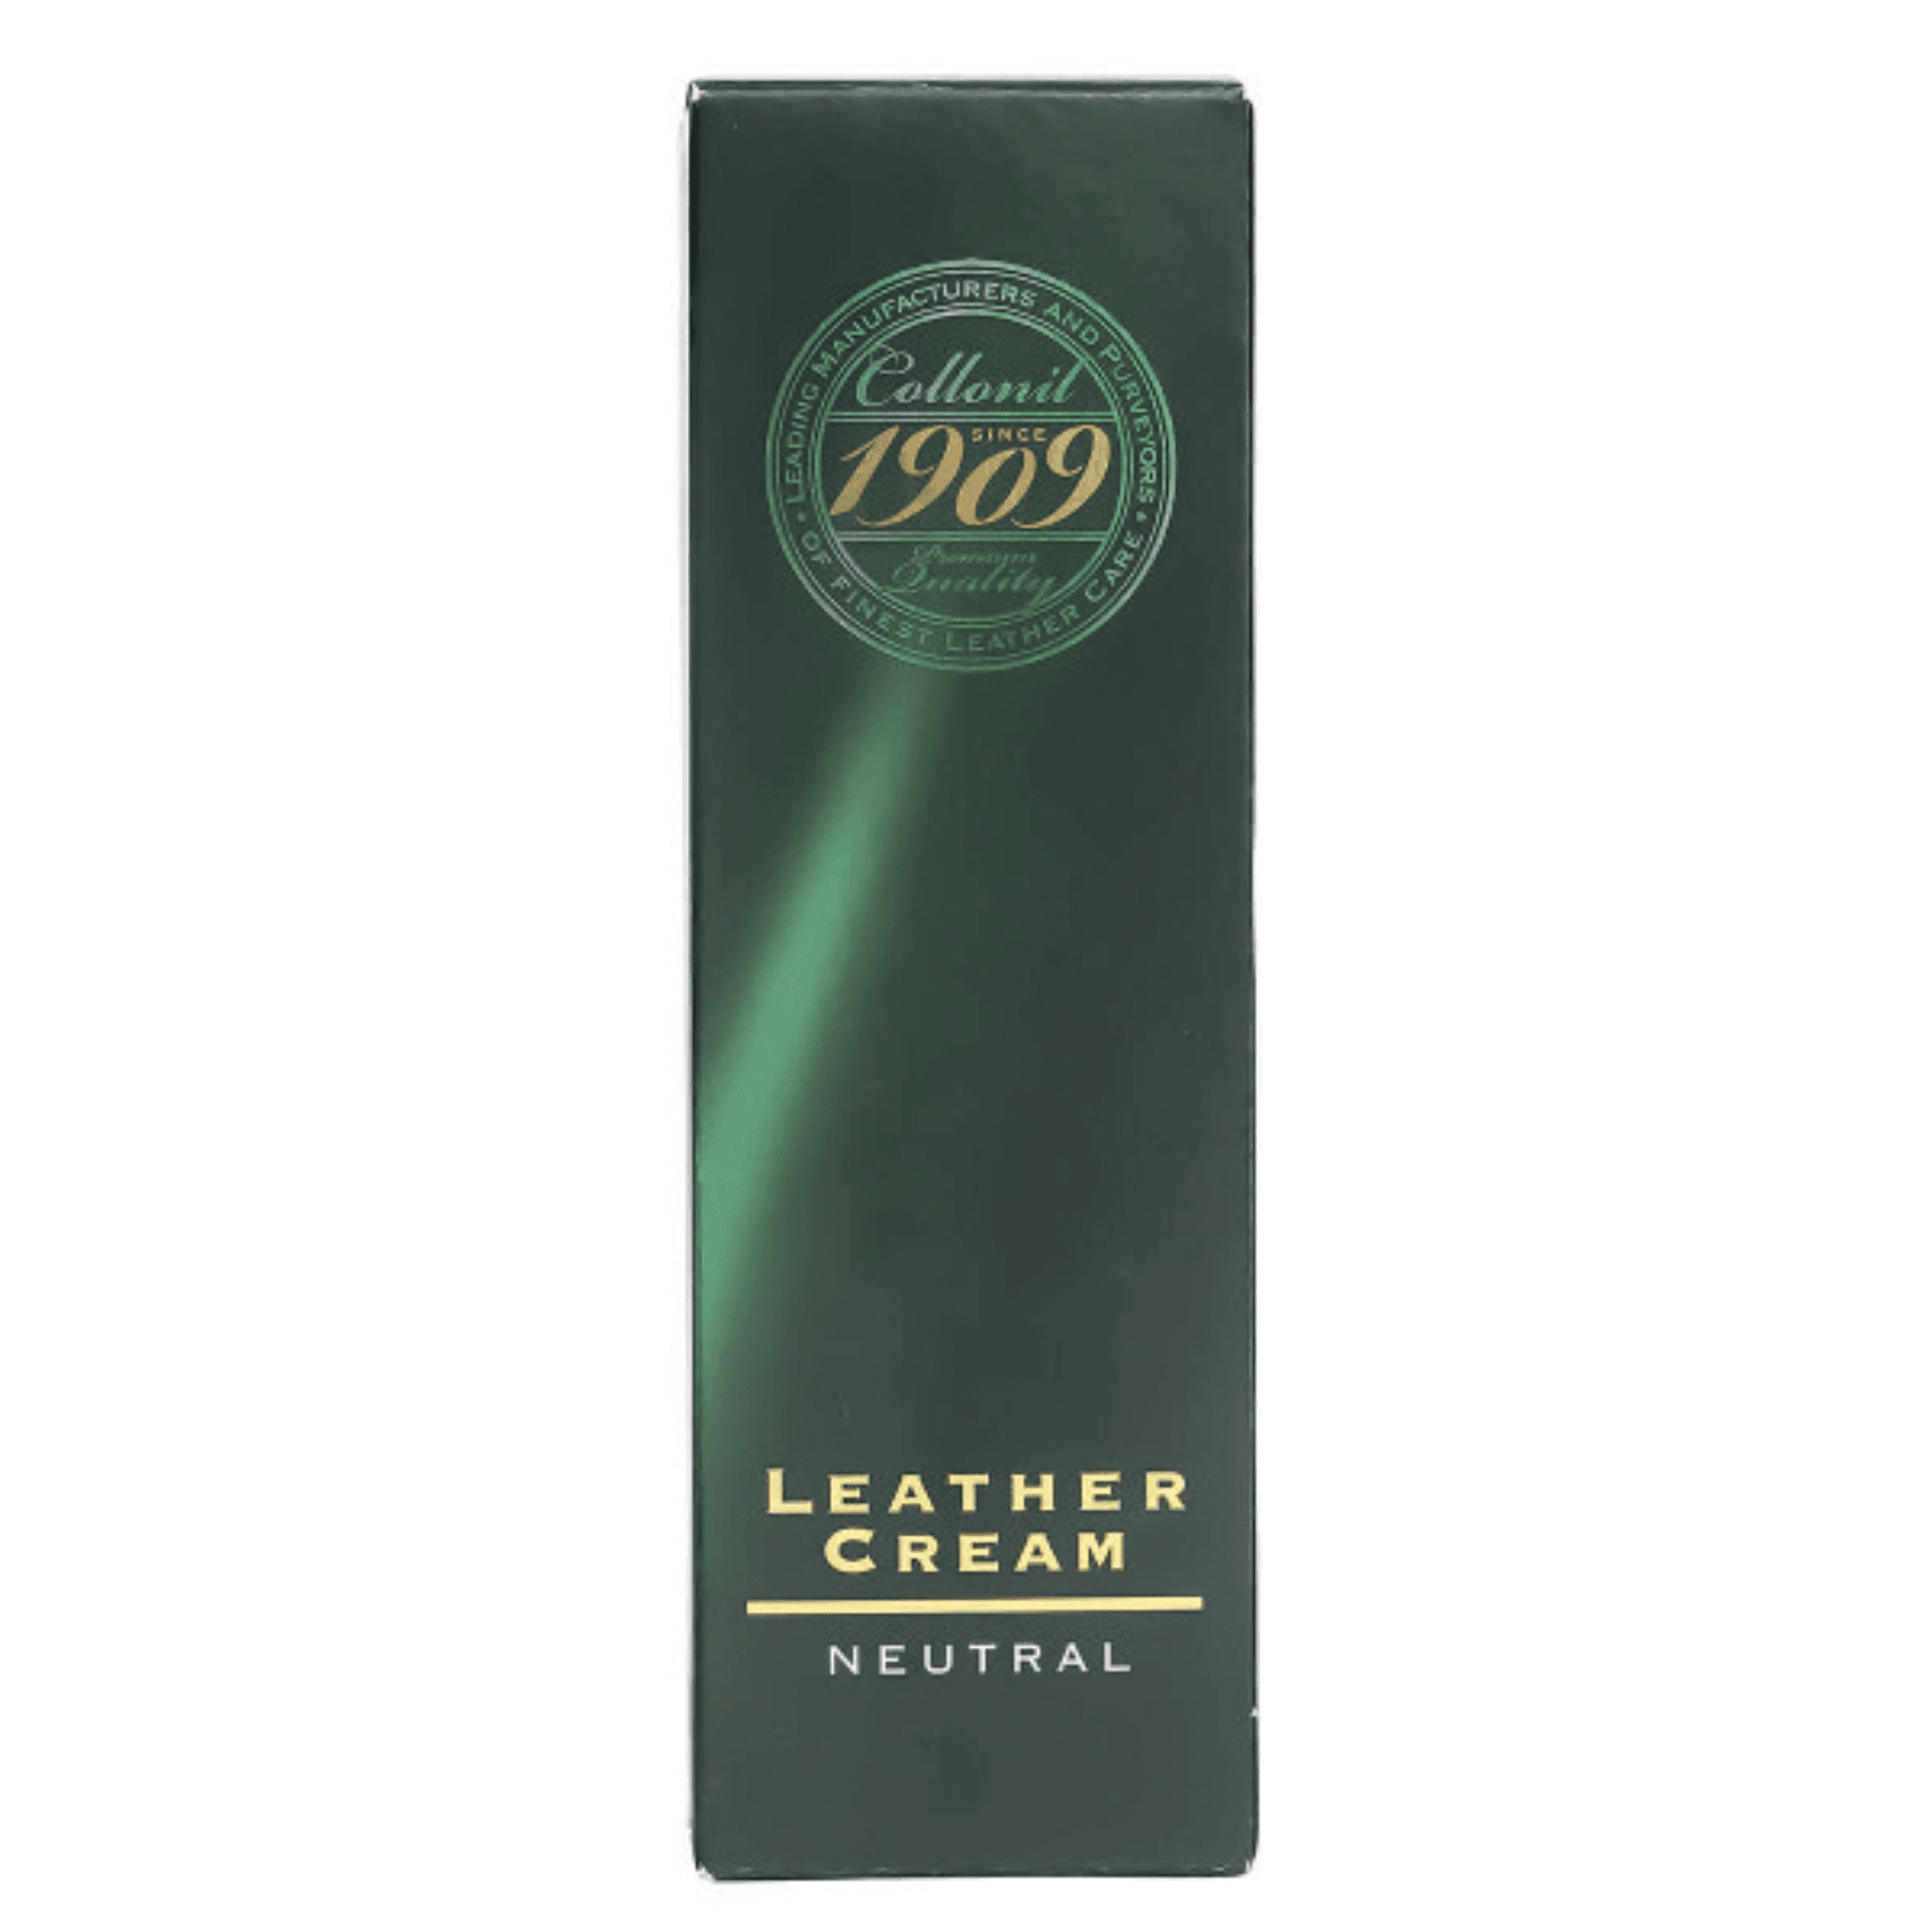 1909 Leather Cream - Entretien